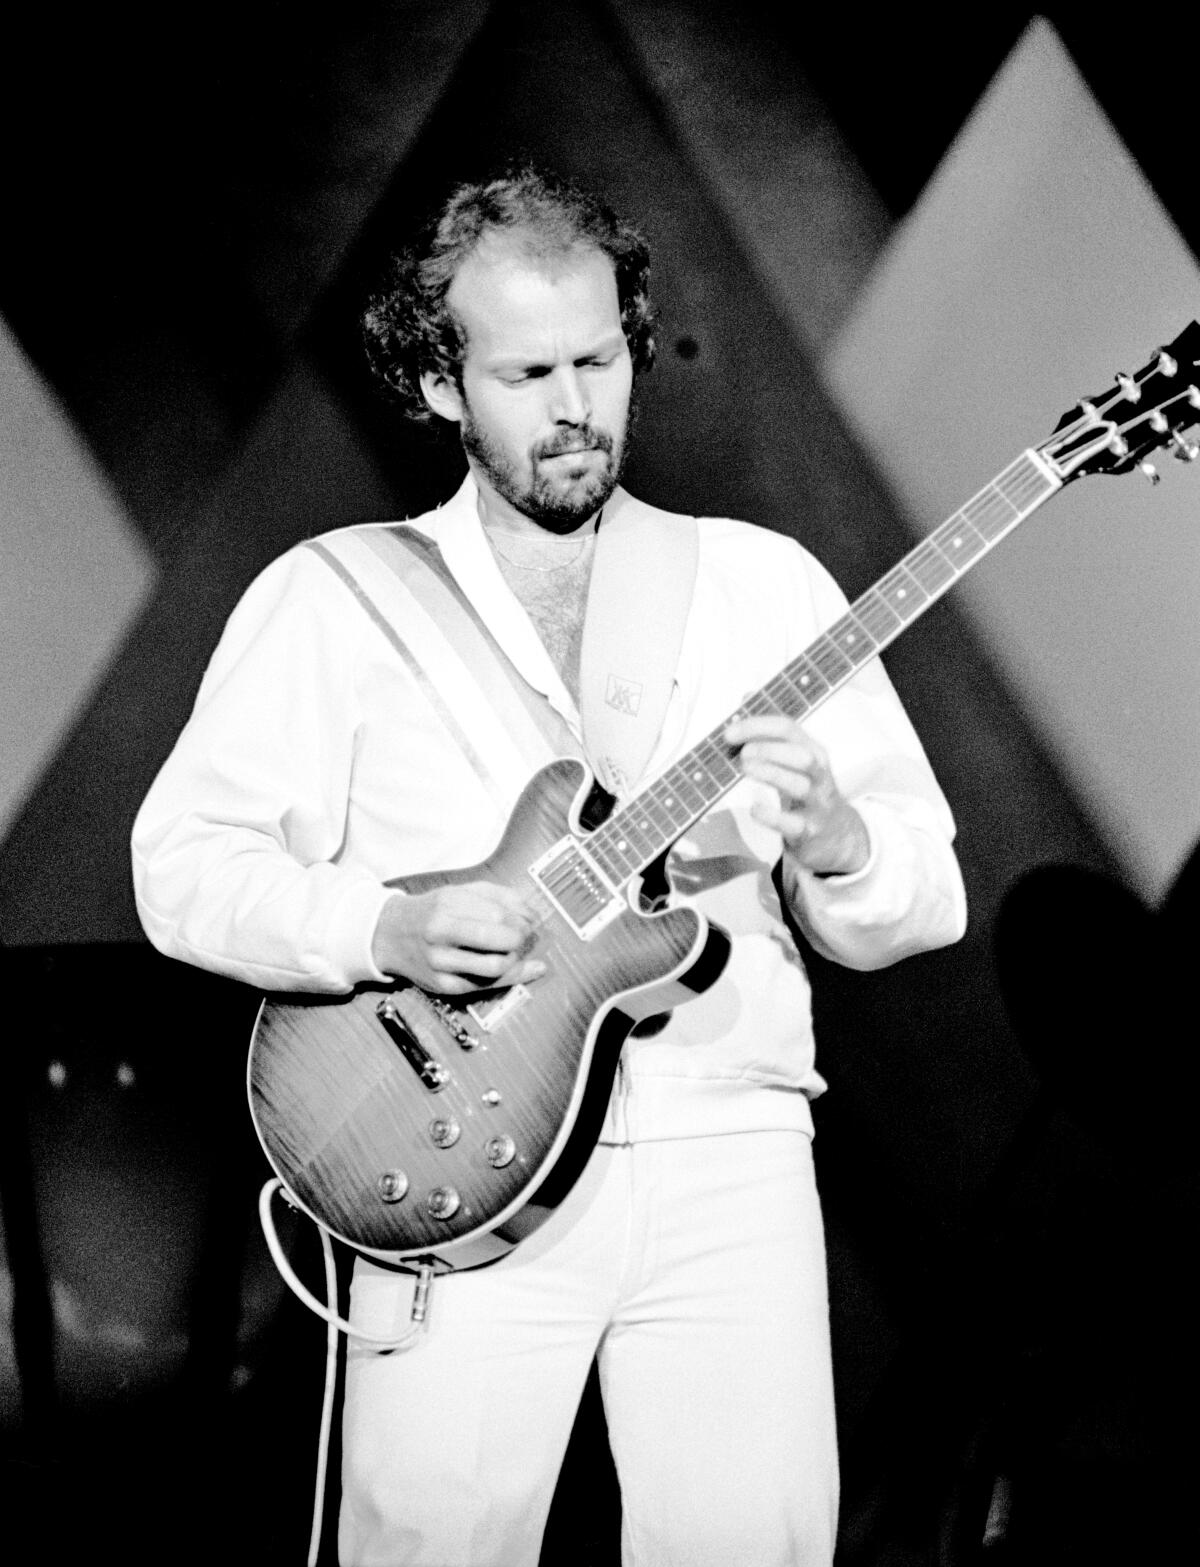 Lasse Wellander plays guitar in 1979